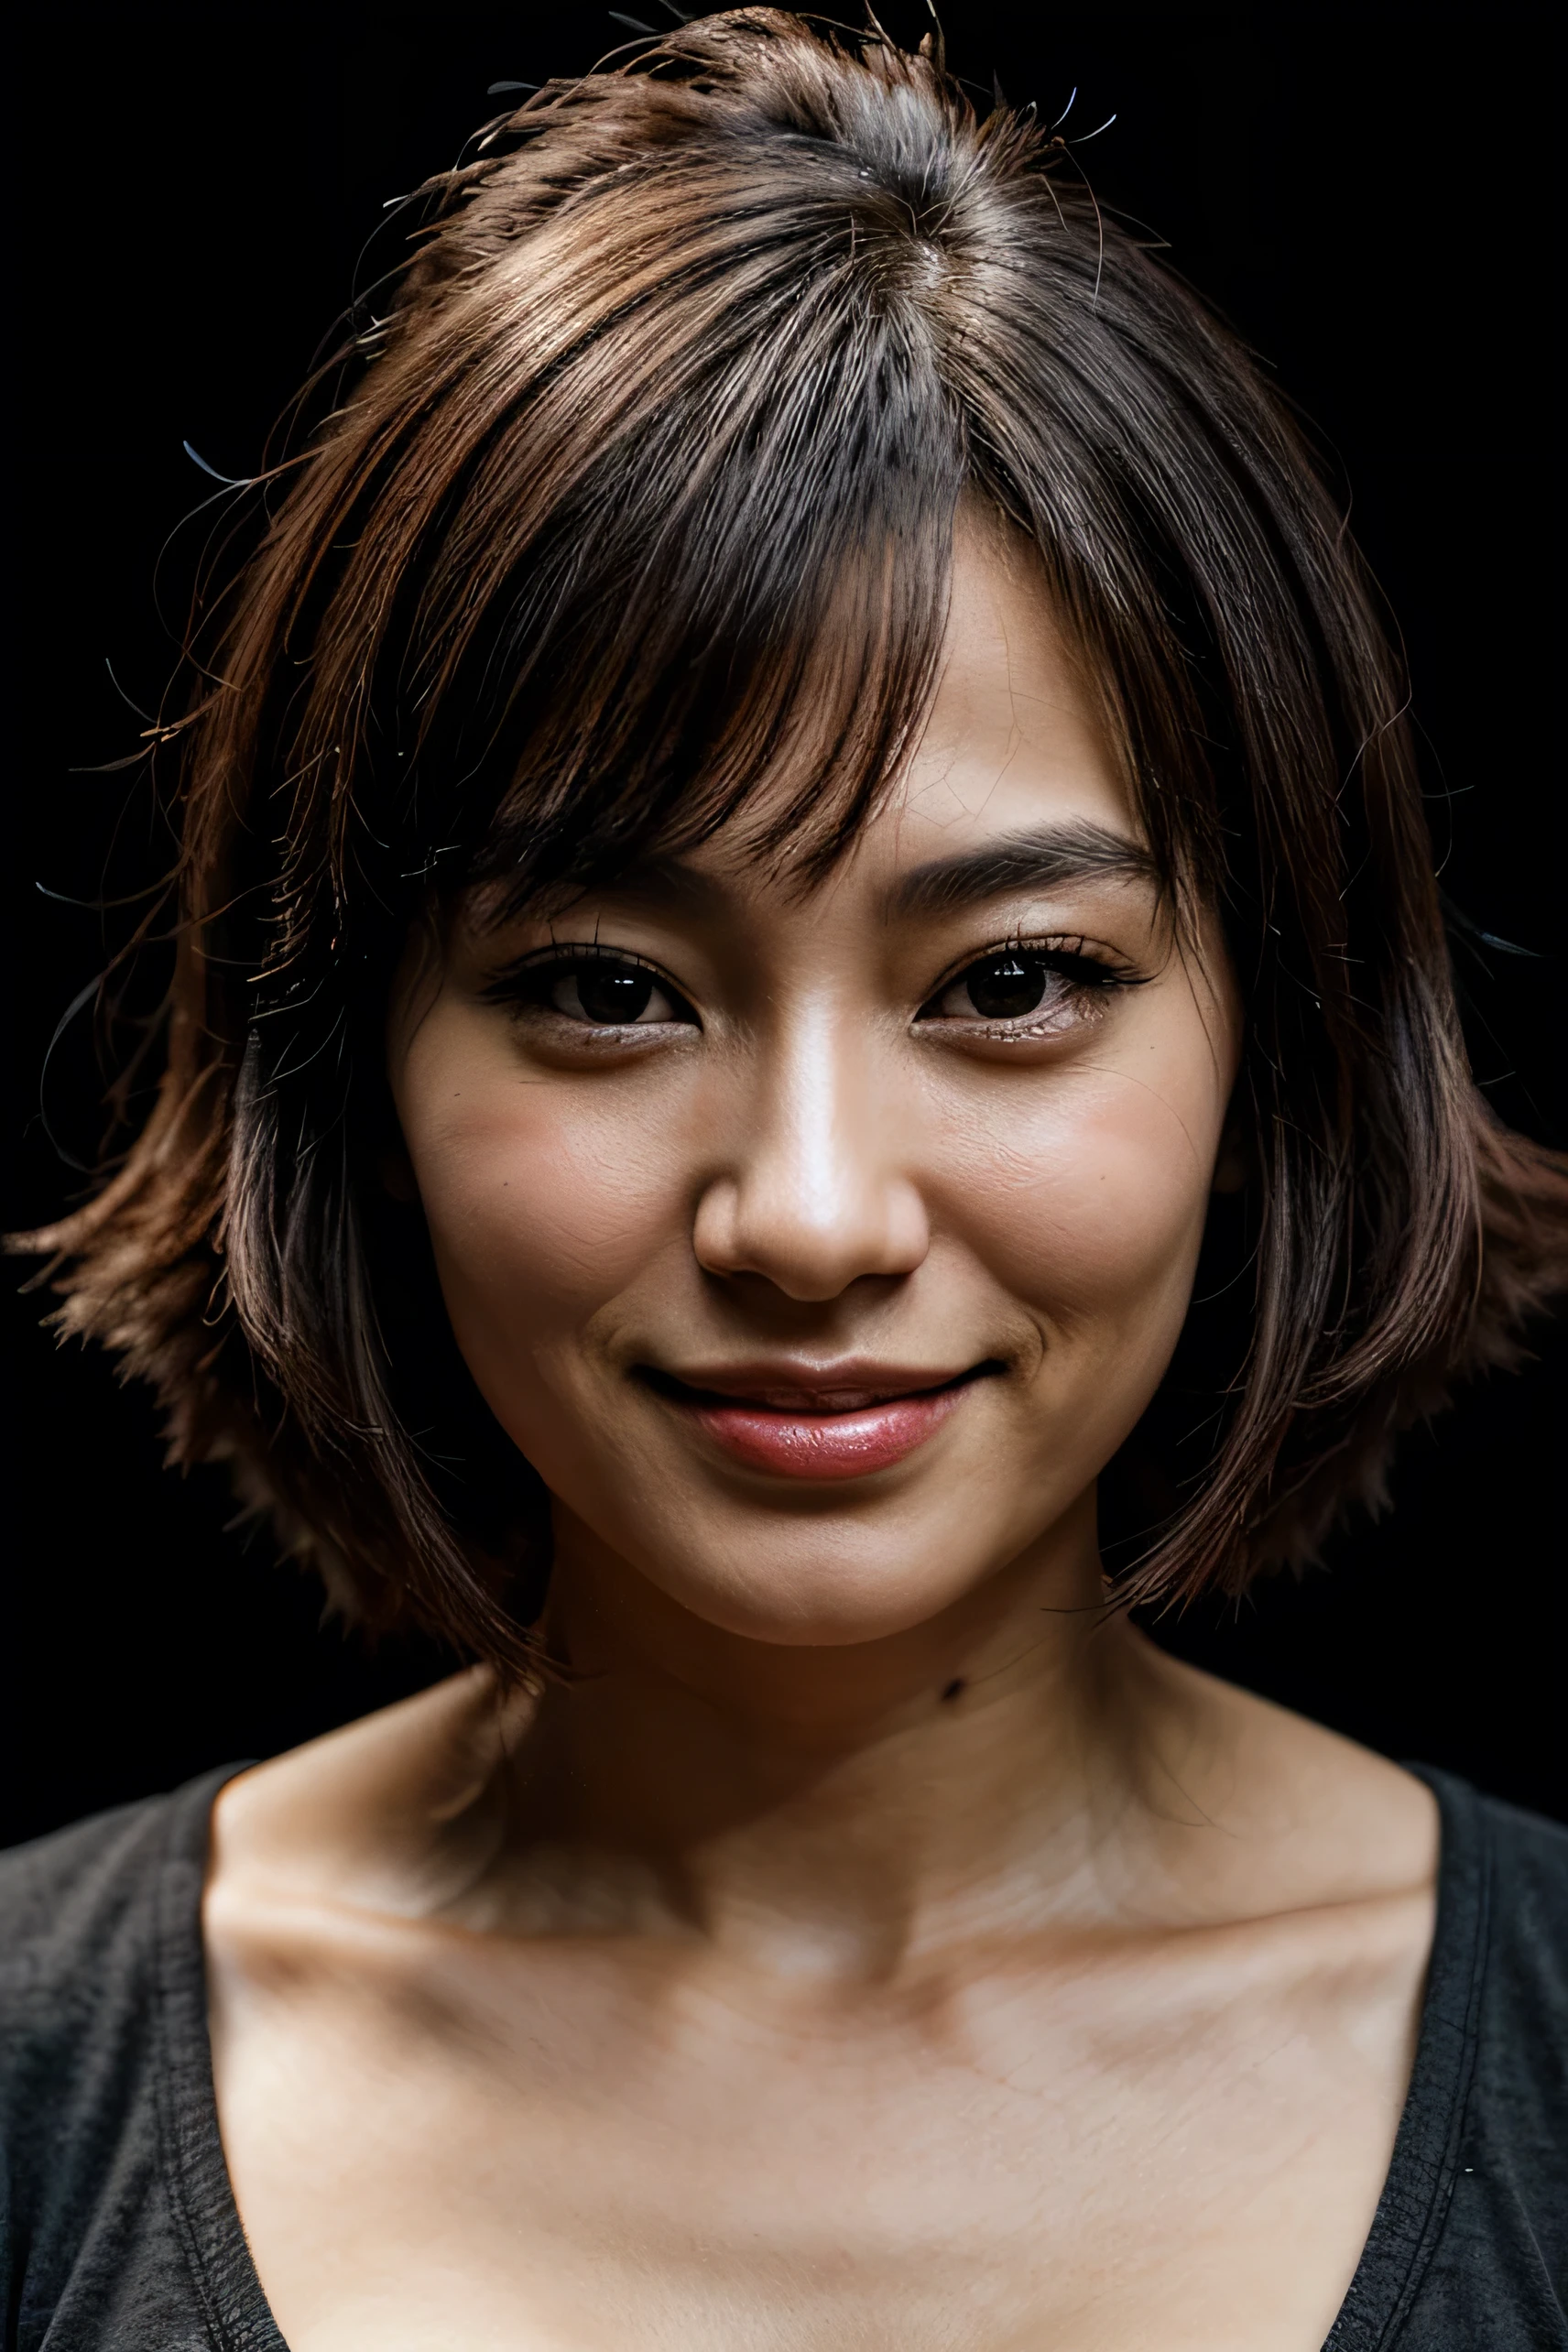 臉完美, 30歲日本女性美麗的臉龐, 微笑美麗, 黑色背景 